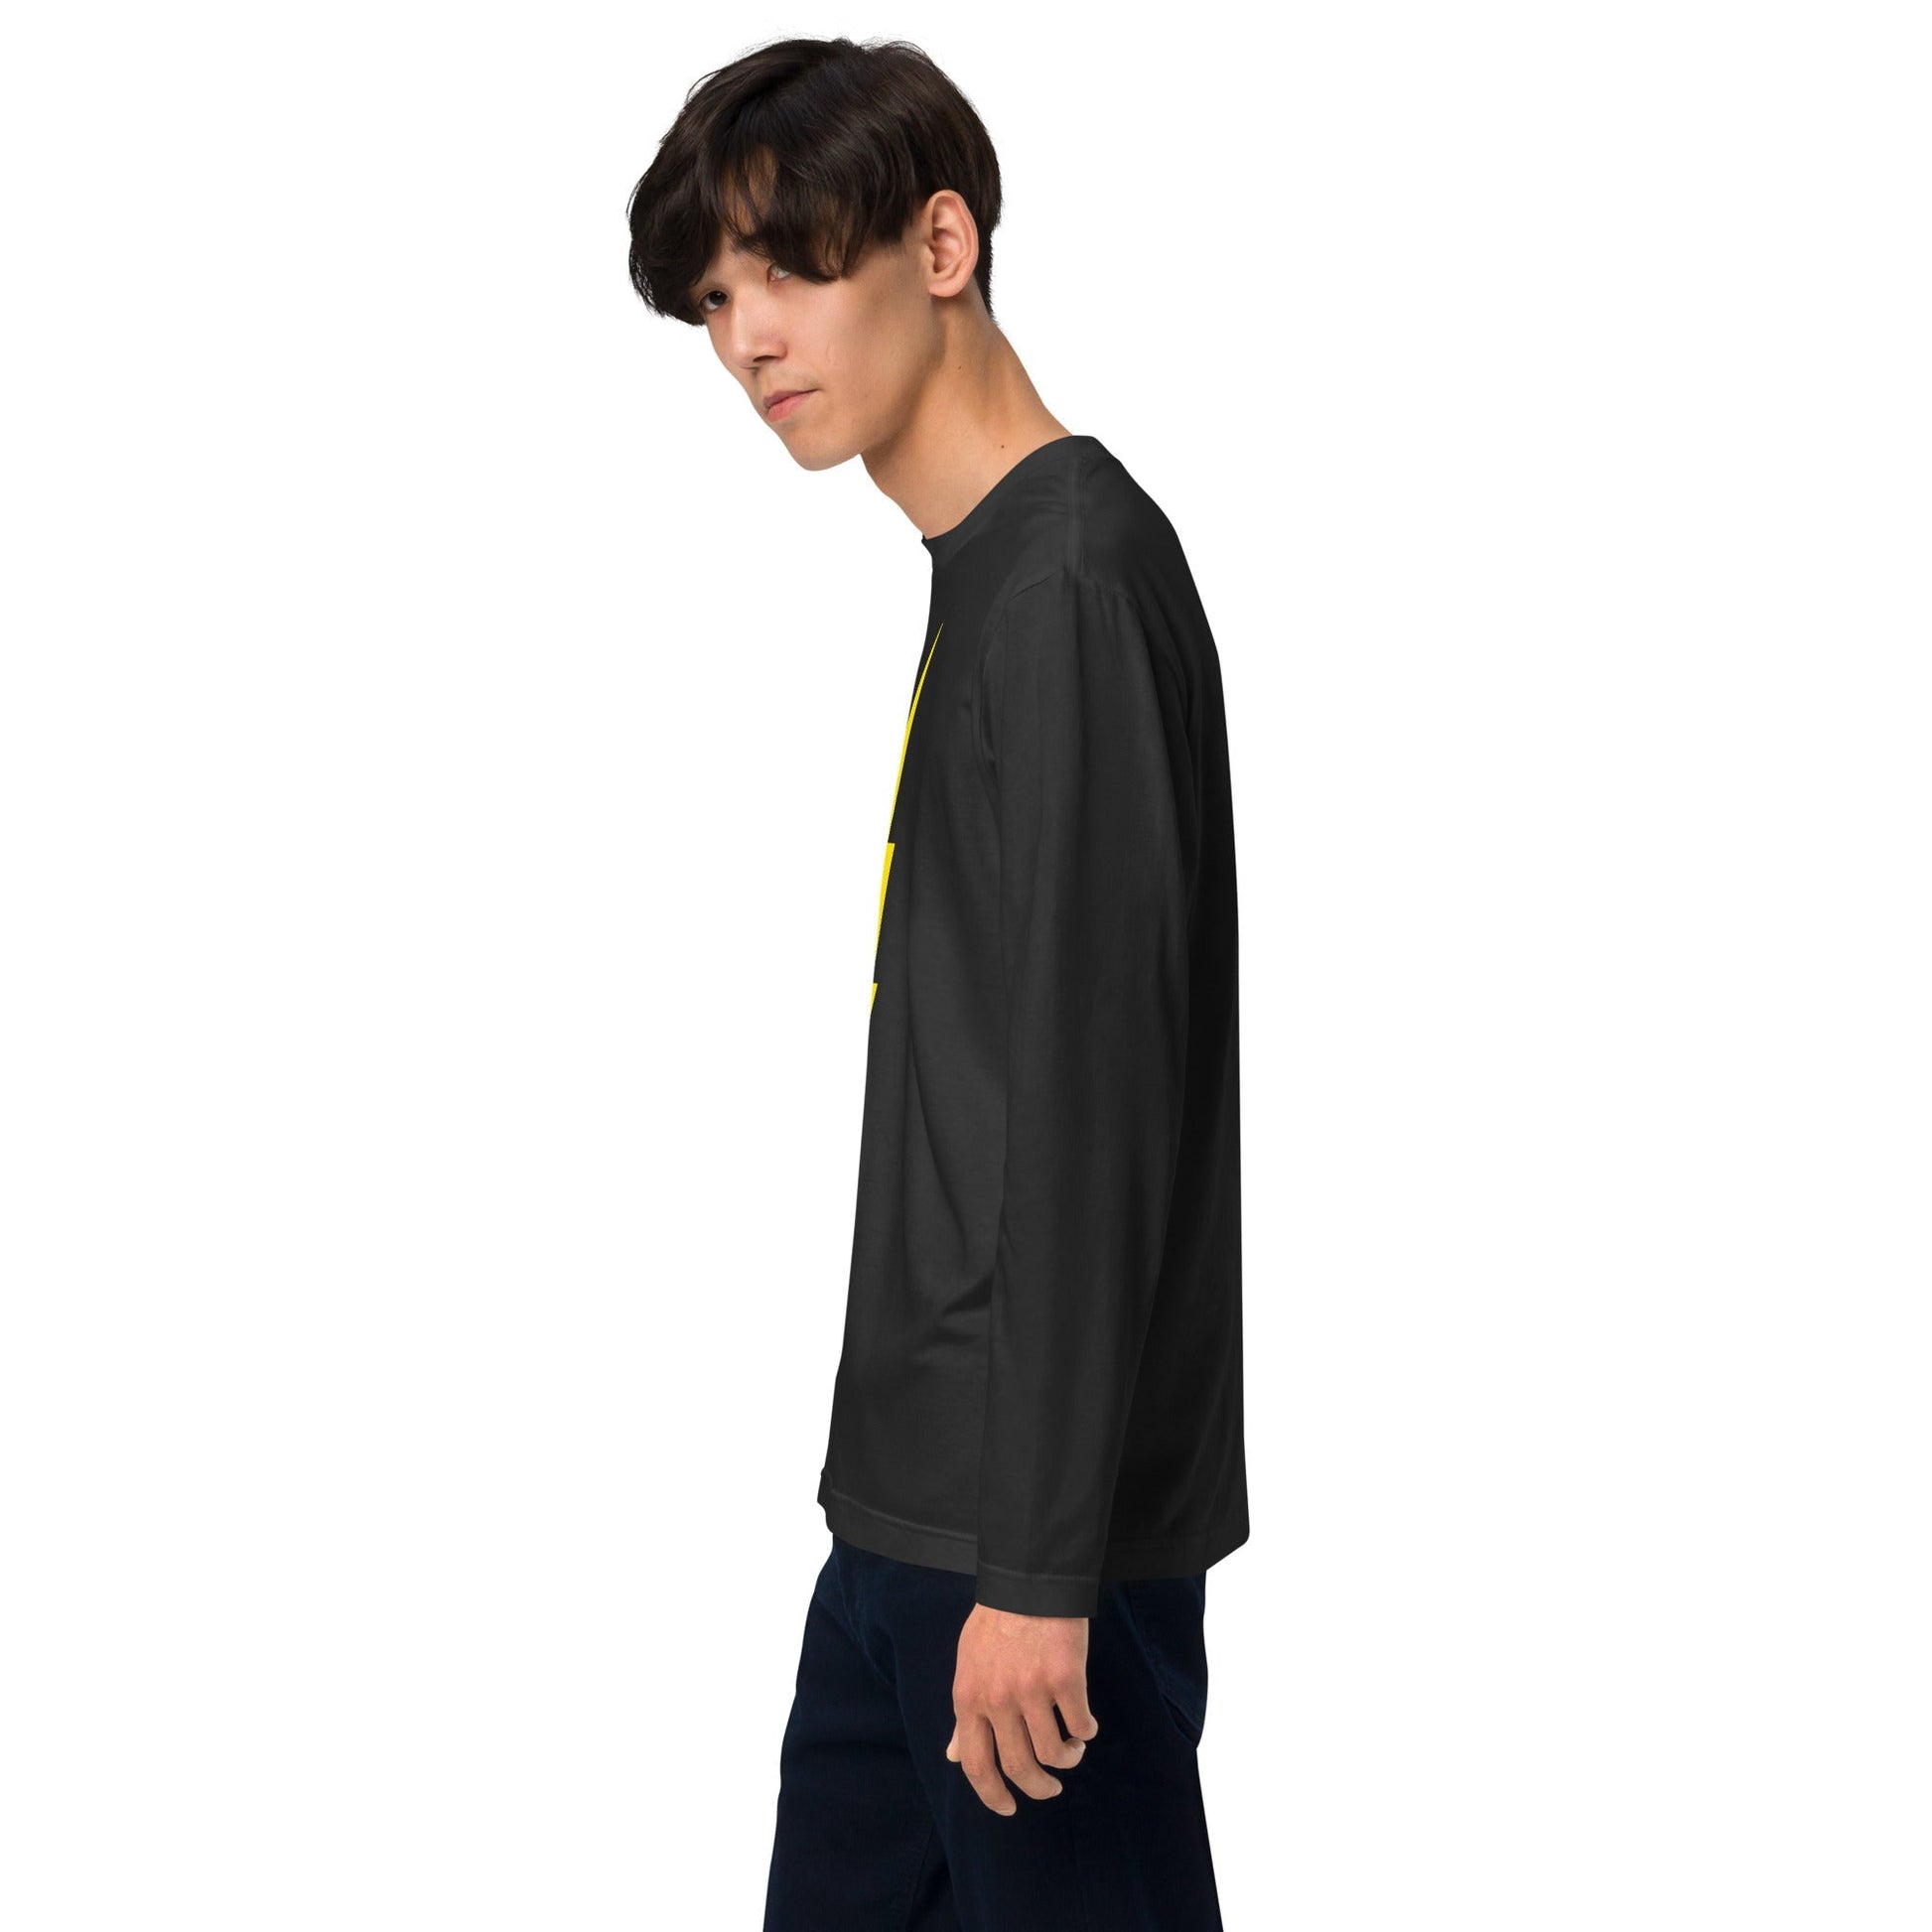 Bolt Premium Long Sleeve T-Shirt - Pixel Gallery